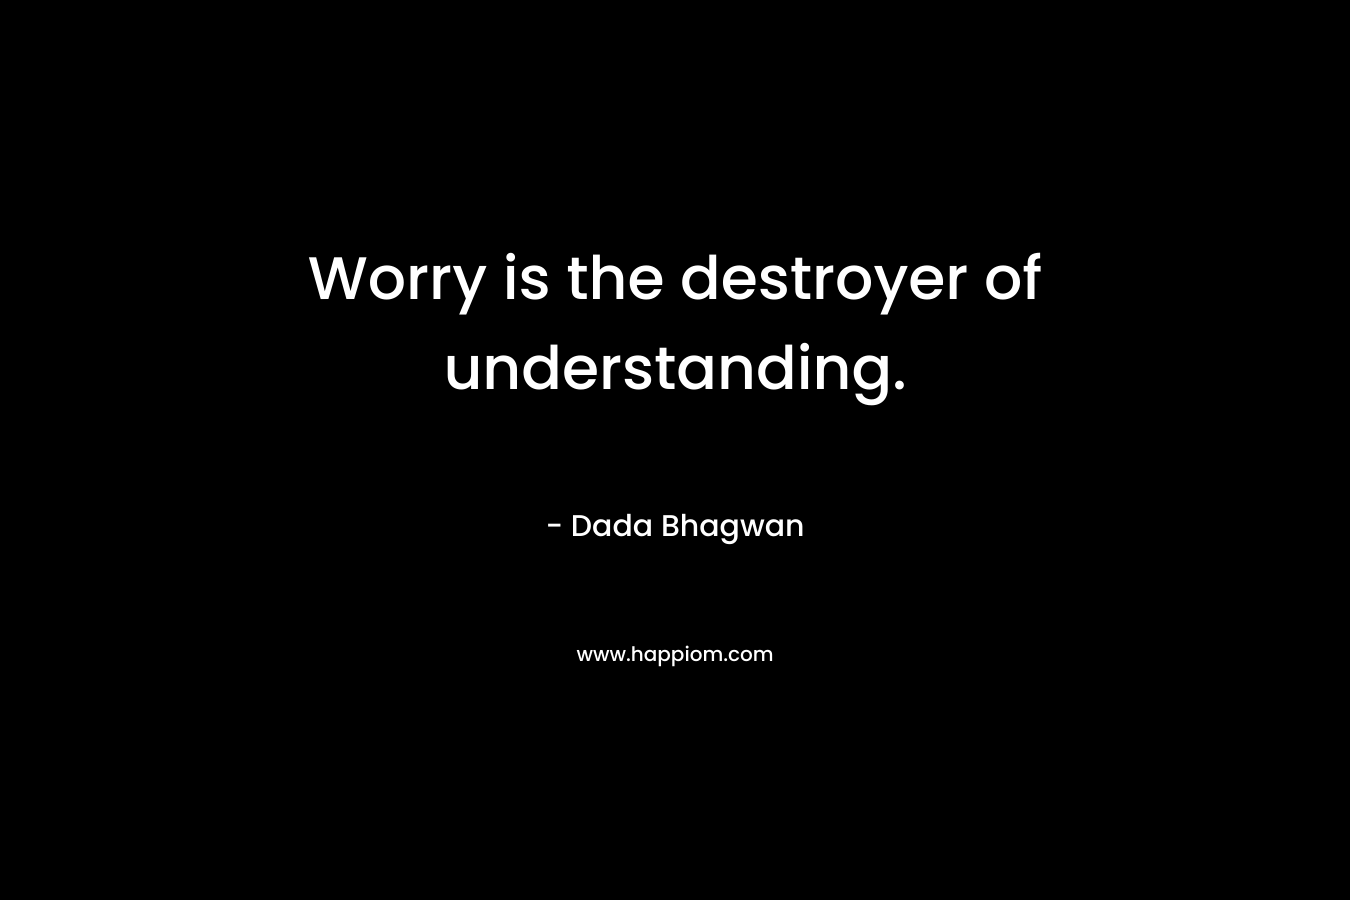 Worry is the destroyer of understanding.